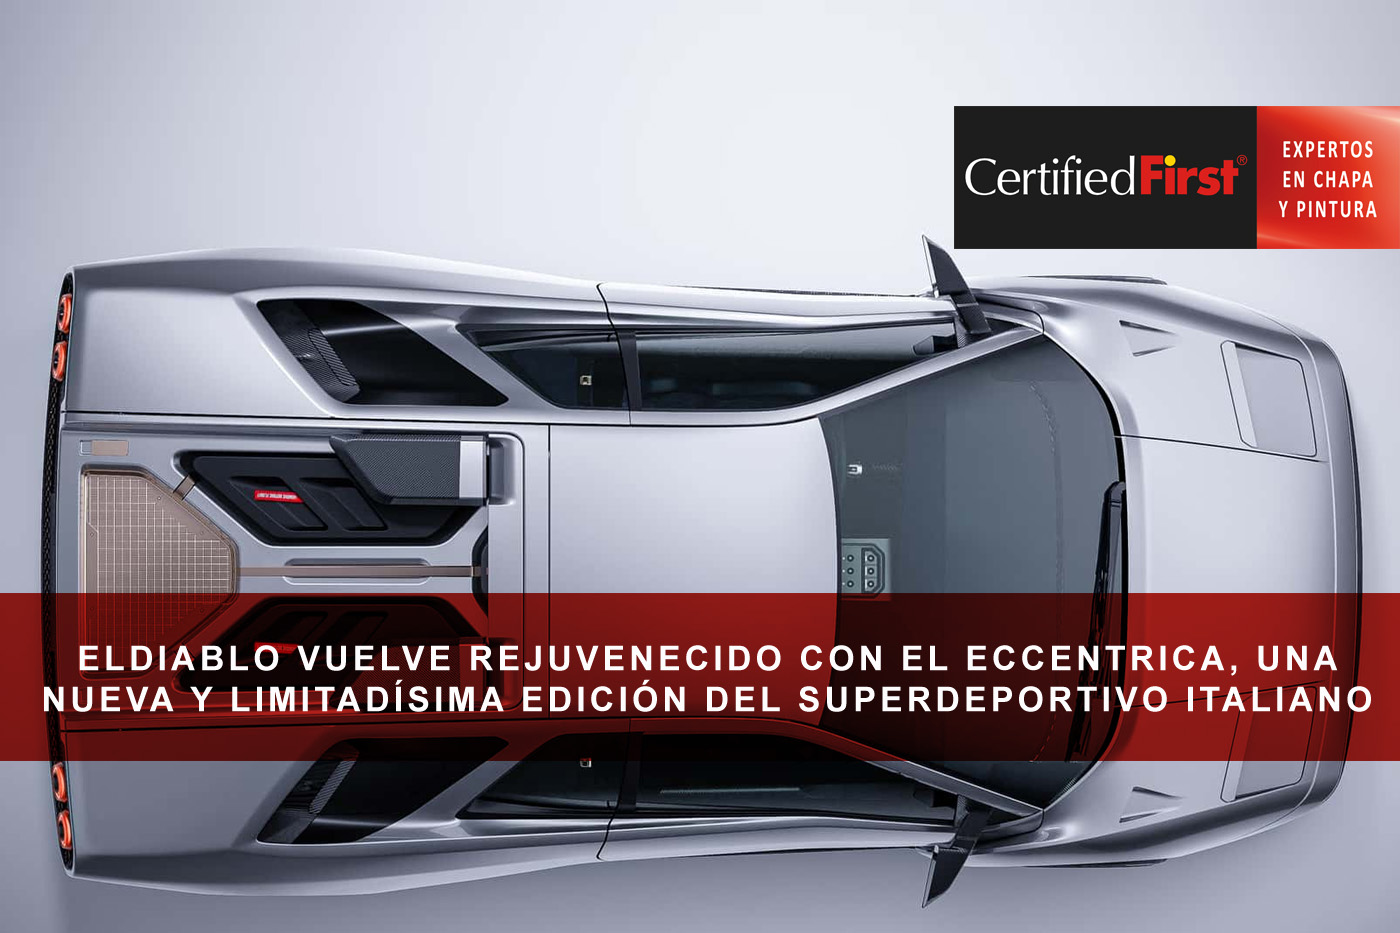 El Lamborghini Diablo vuelve rejuvenecido con el Eccentrica, una nueva y limitadísima edición del superdeportivo italiano